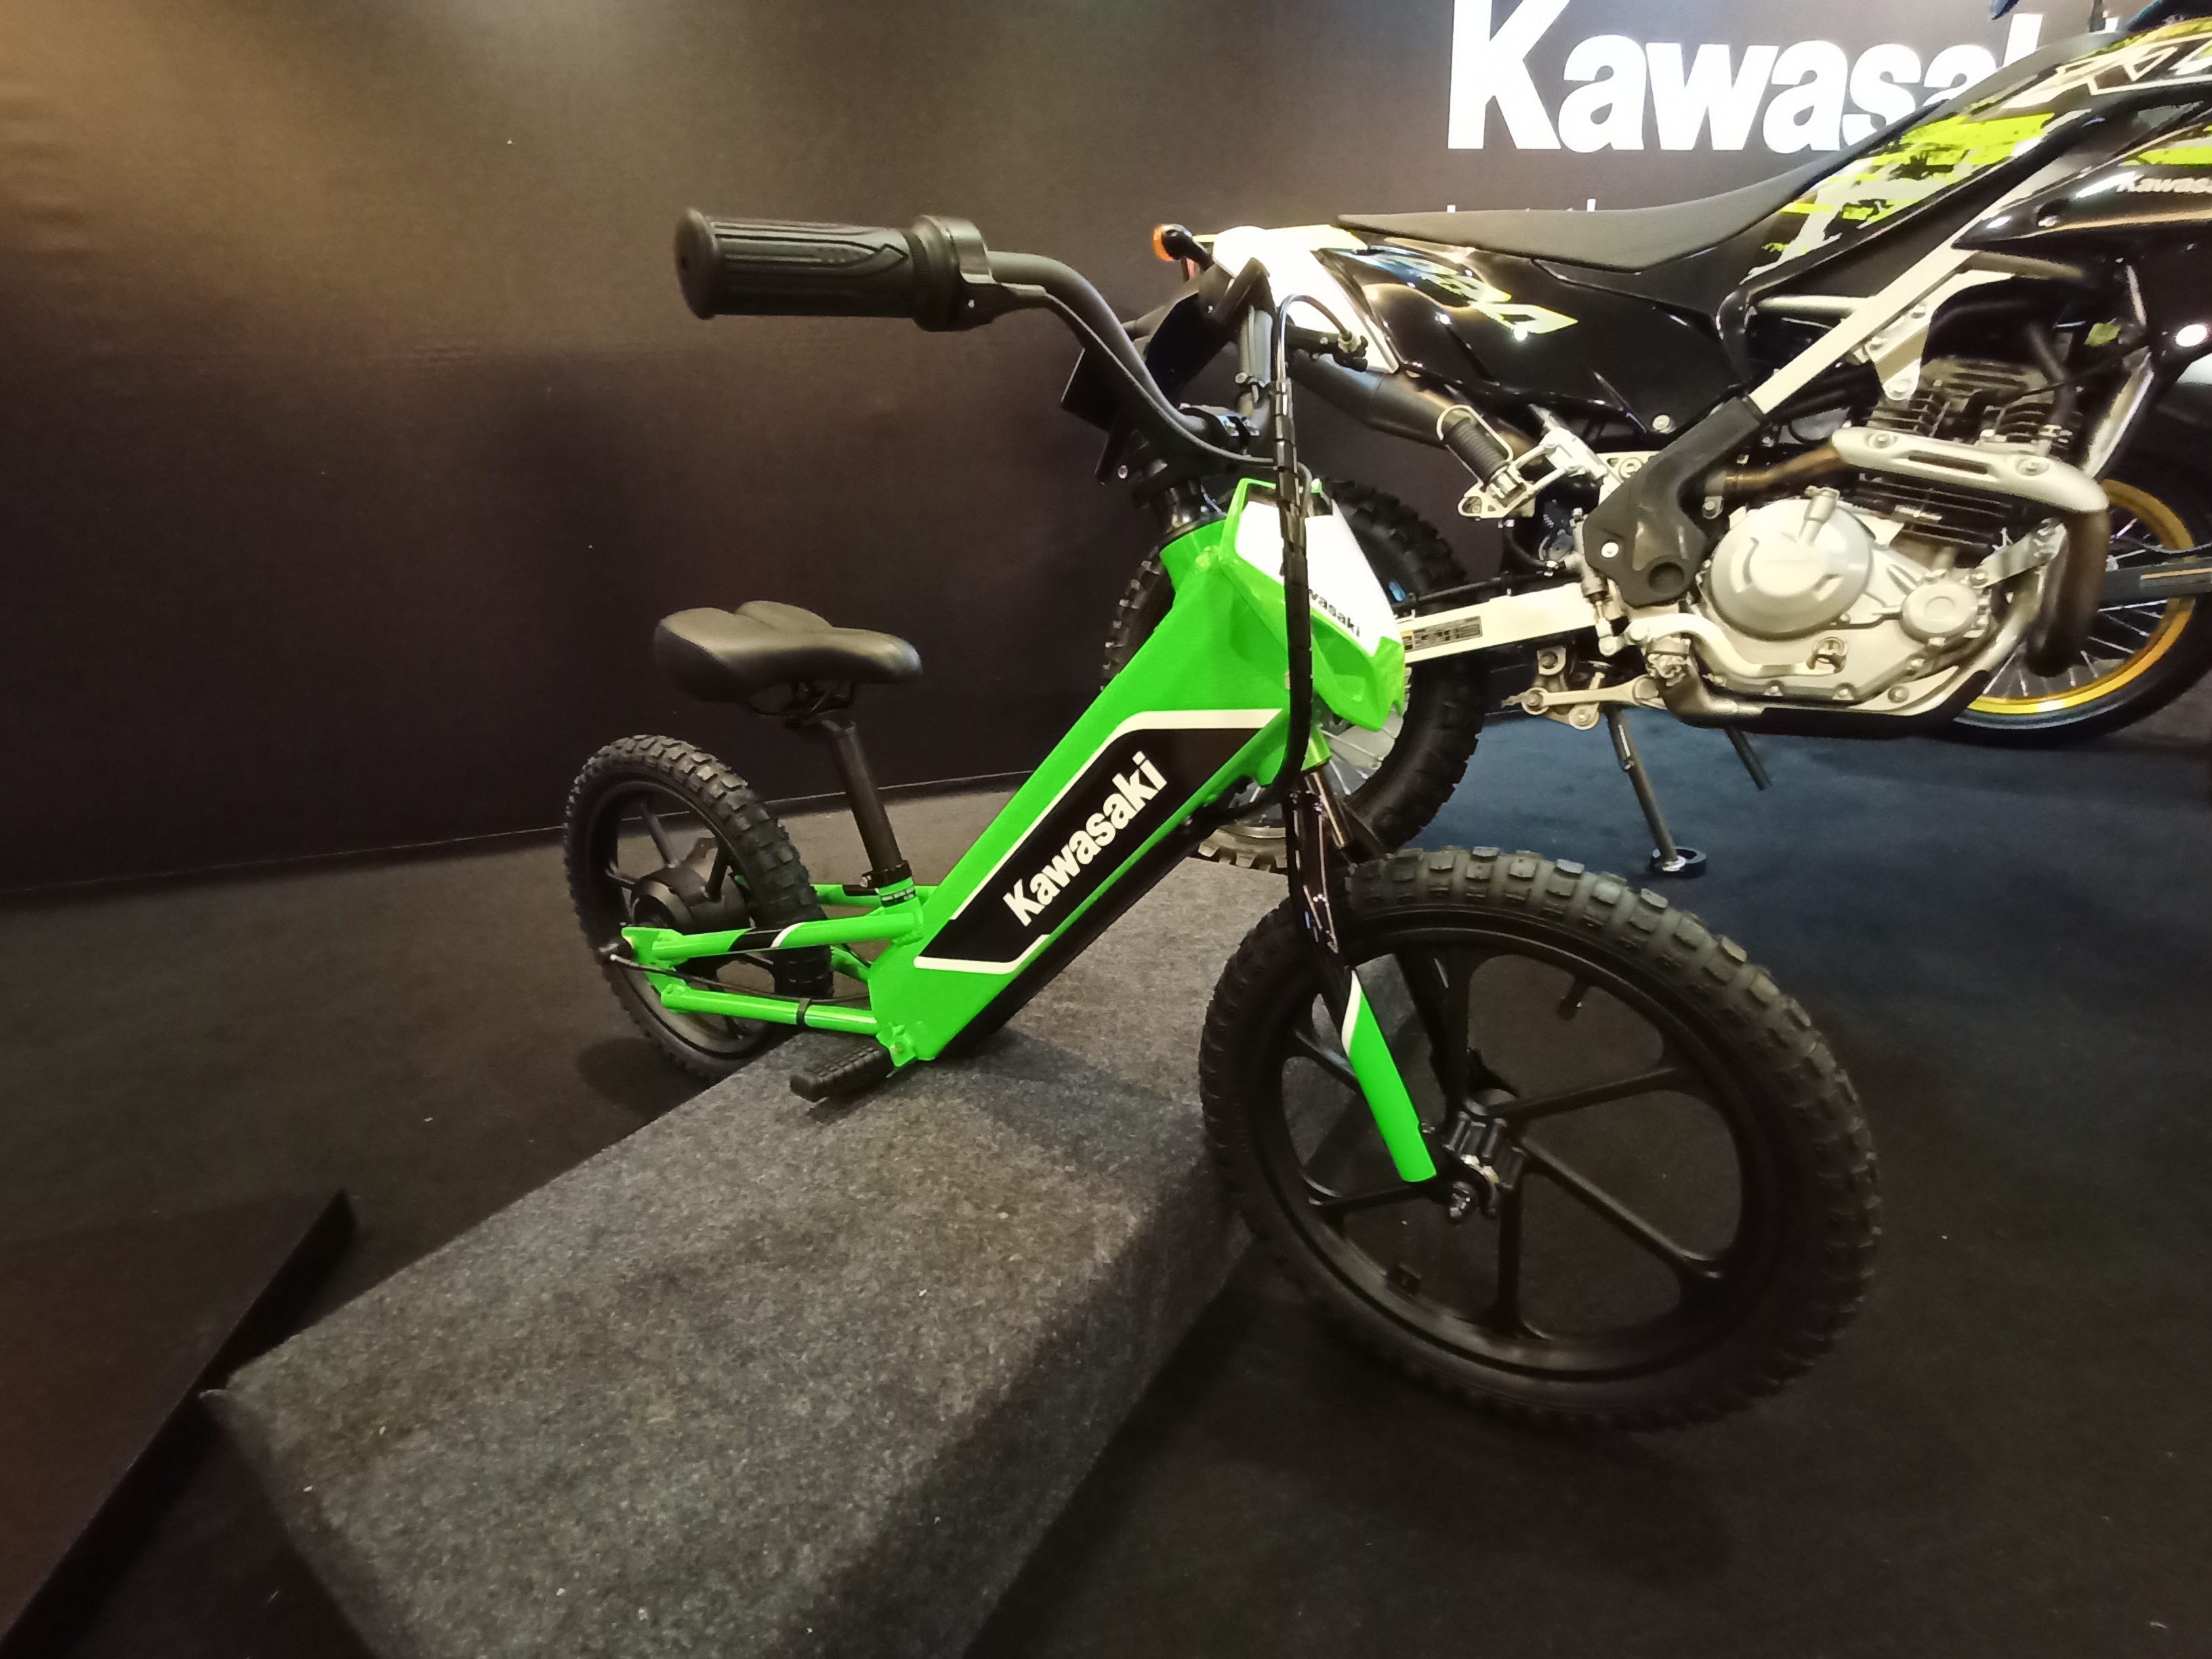 Kawasaki Indonesia Akhirnya 'Luncurkan' Motor Listrik